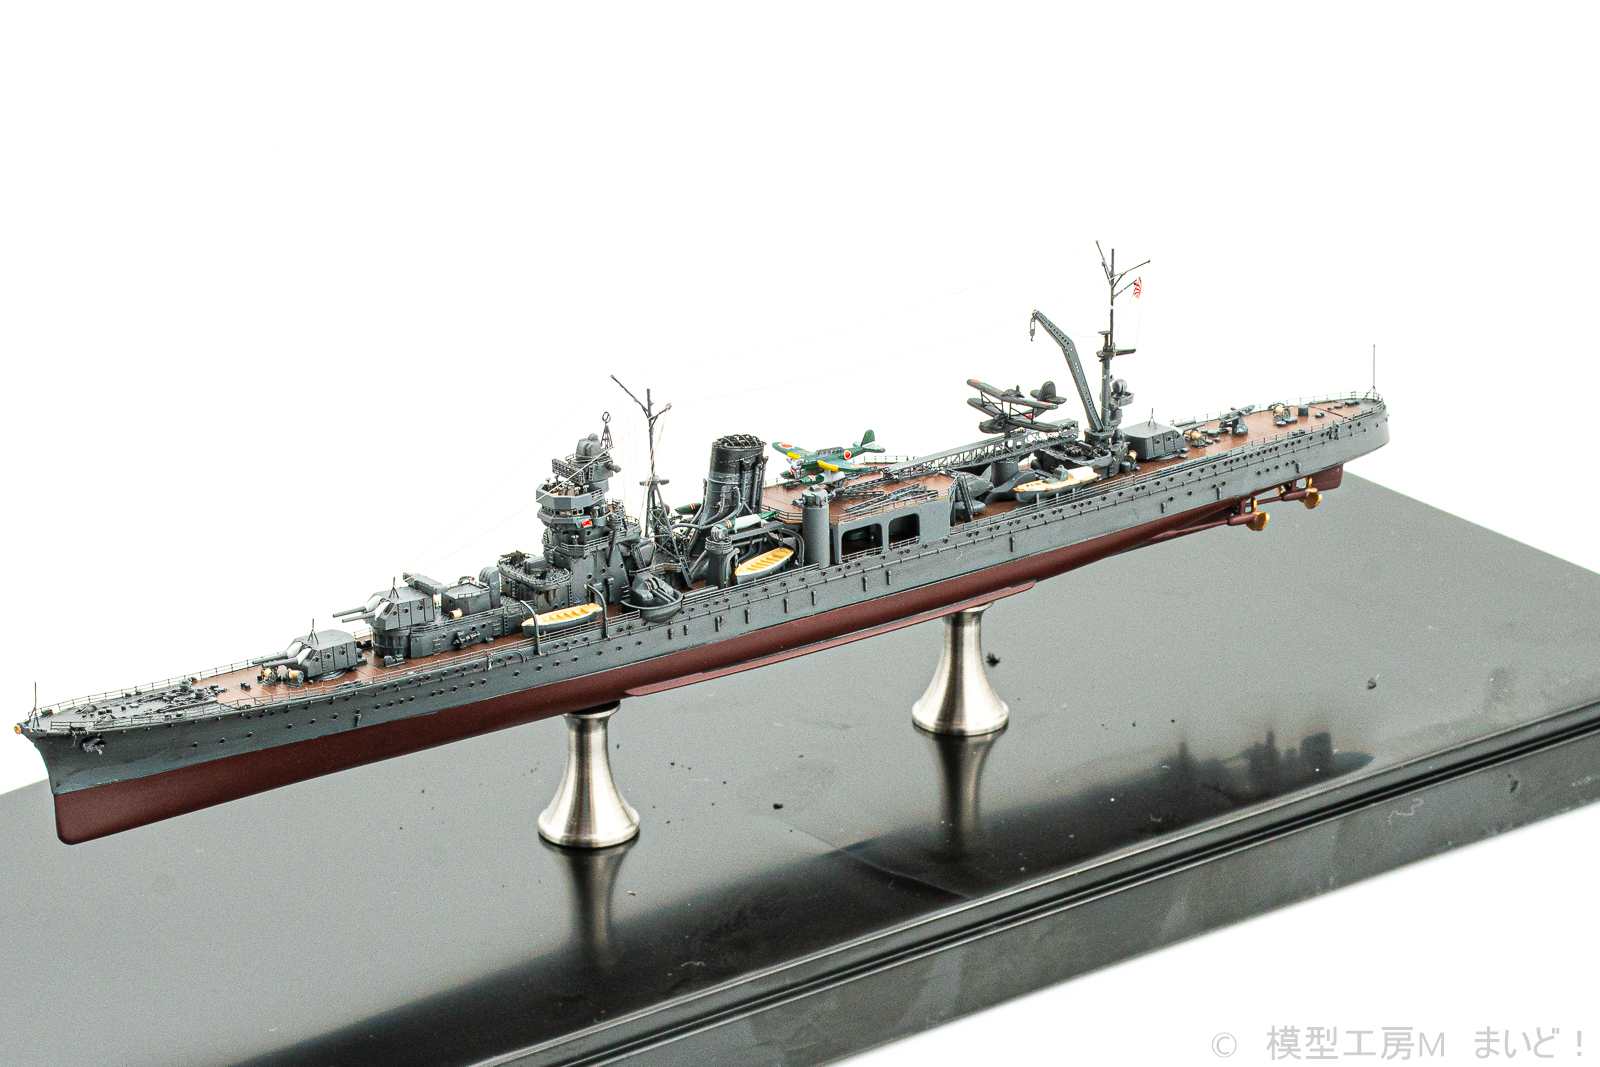 フジミ 1/700 日本海軍軽巡洋艦「阿賀野」1943 フルハル 完成 agano